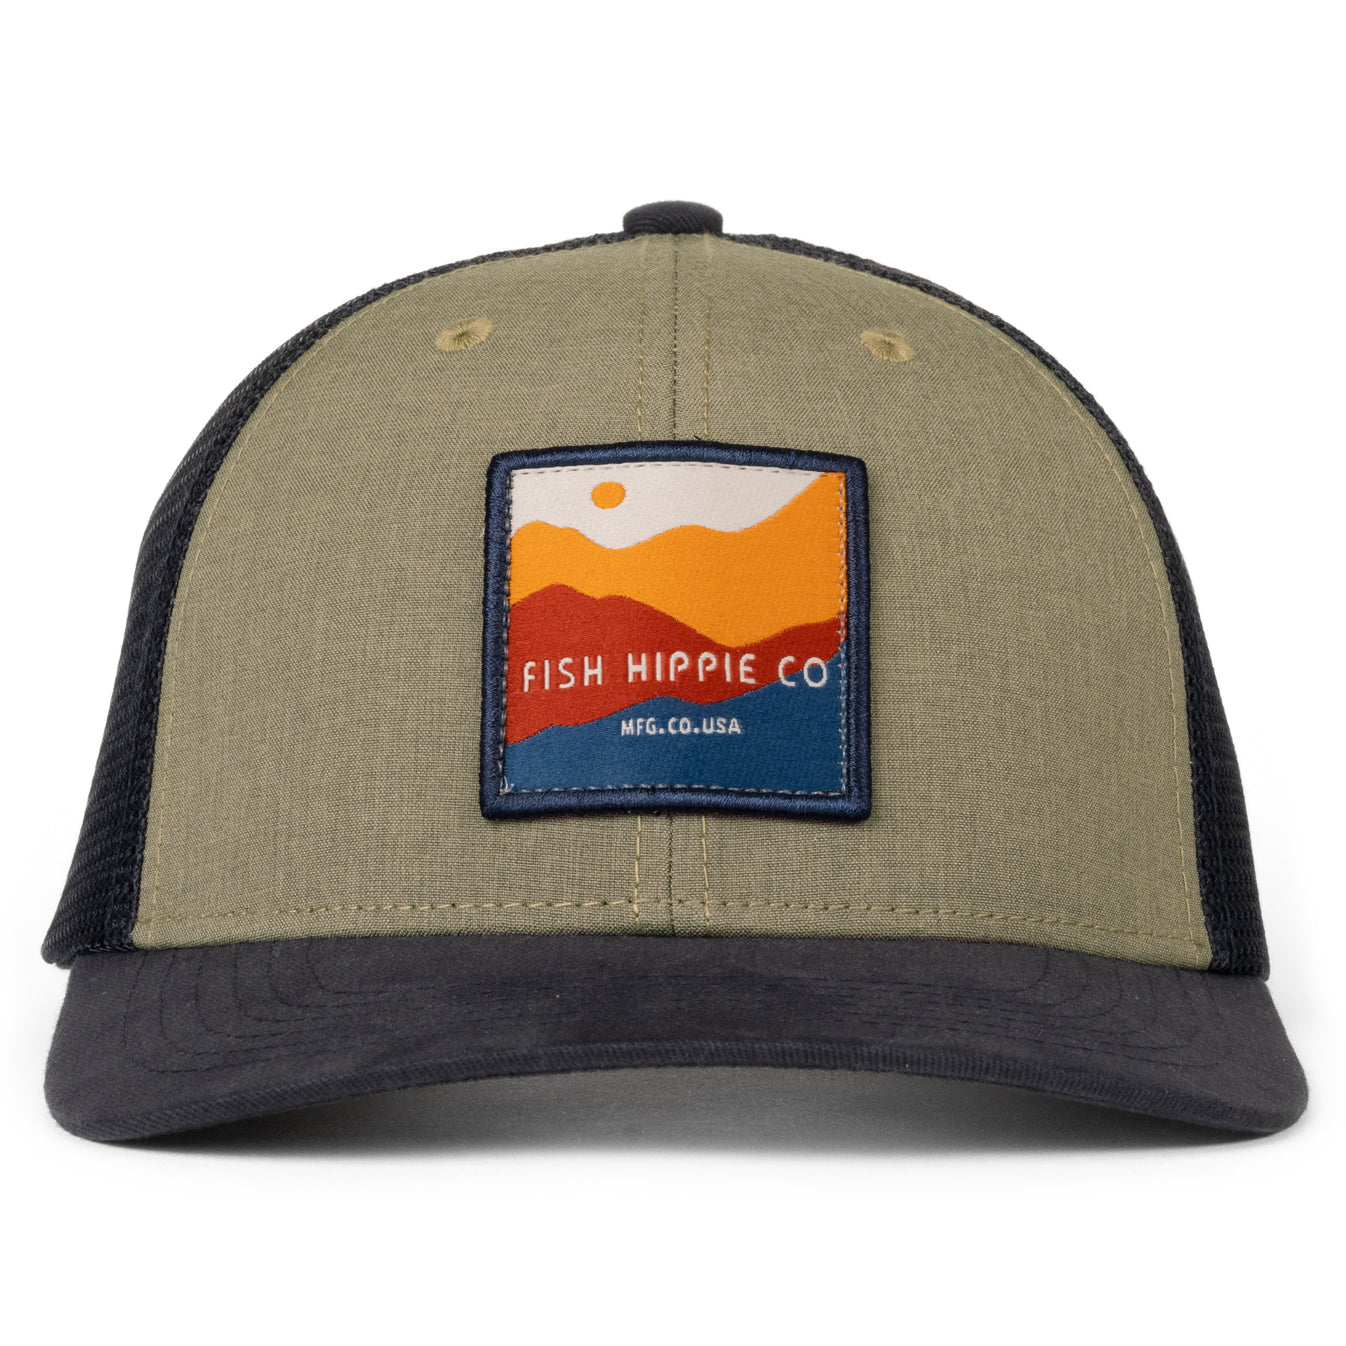 Fish Hippie Upgrade Trucker Hat - Men's Trucker Hats